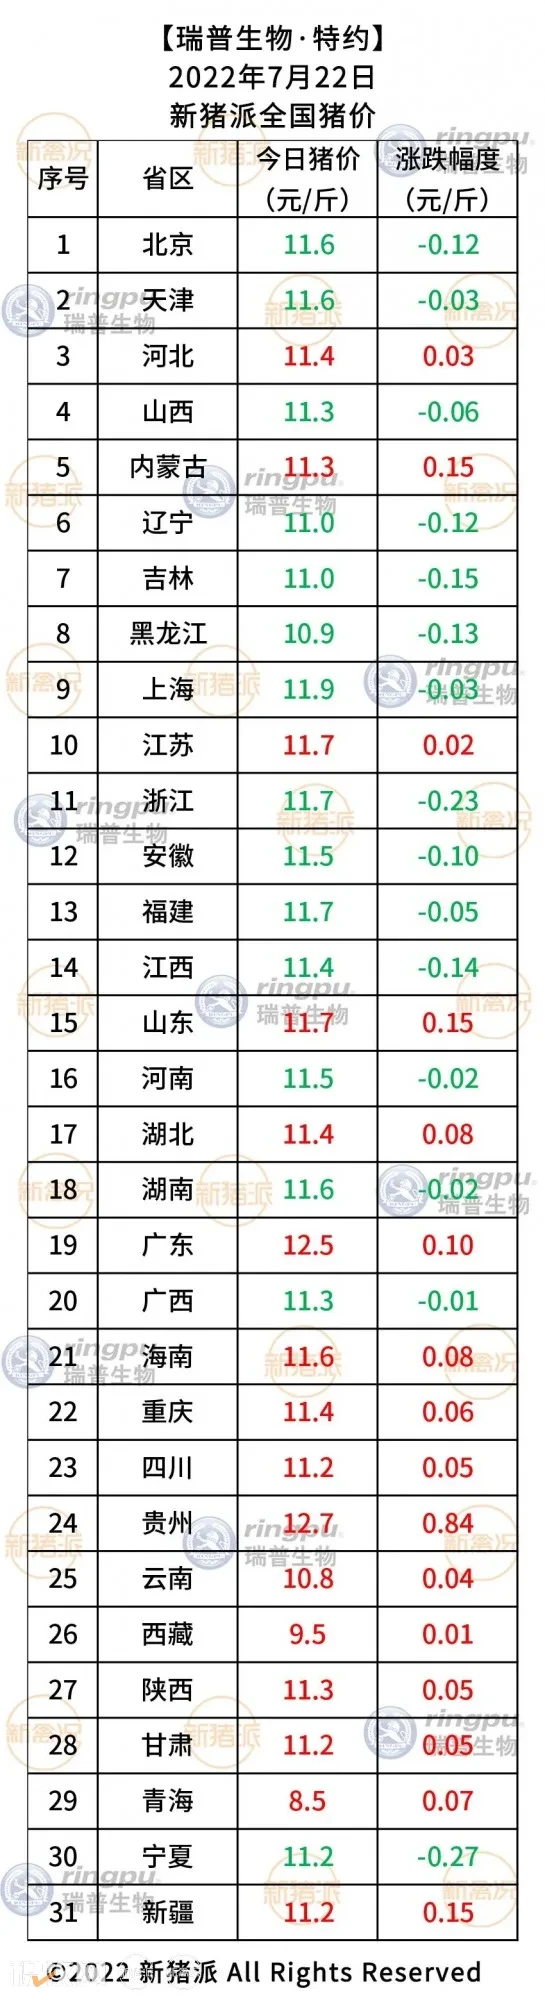 7月22日：贵州、广东涨至12.5元/斤以上【瑞普生物·猪价指数】